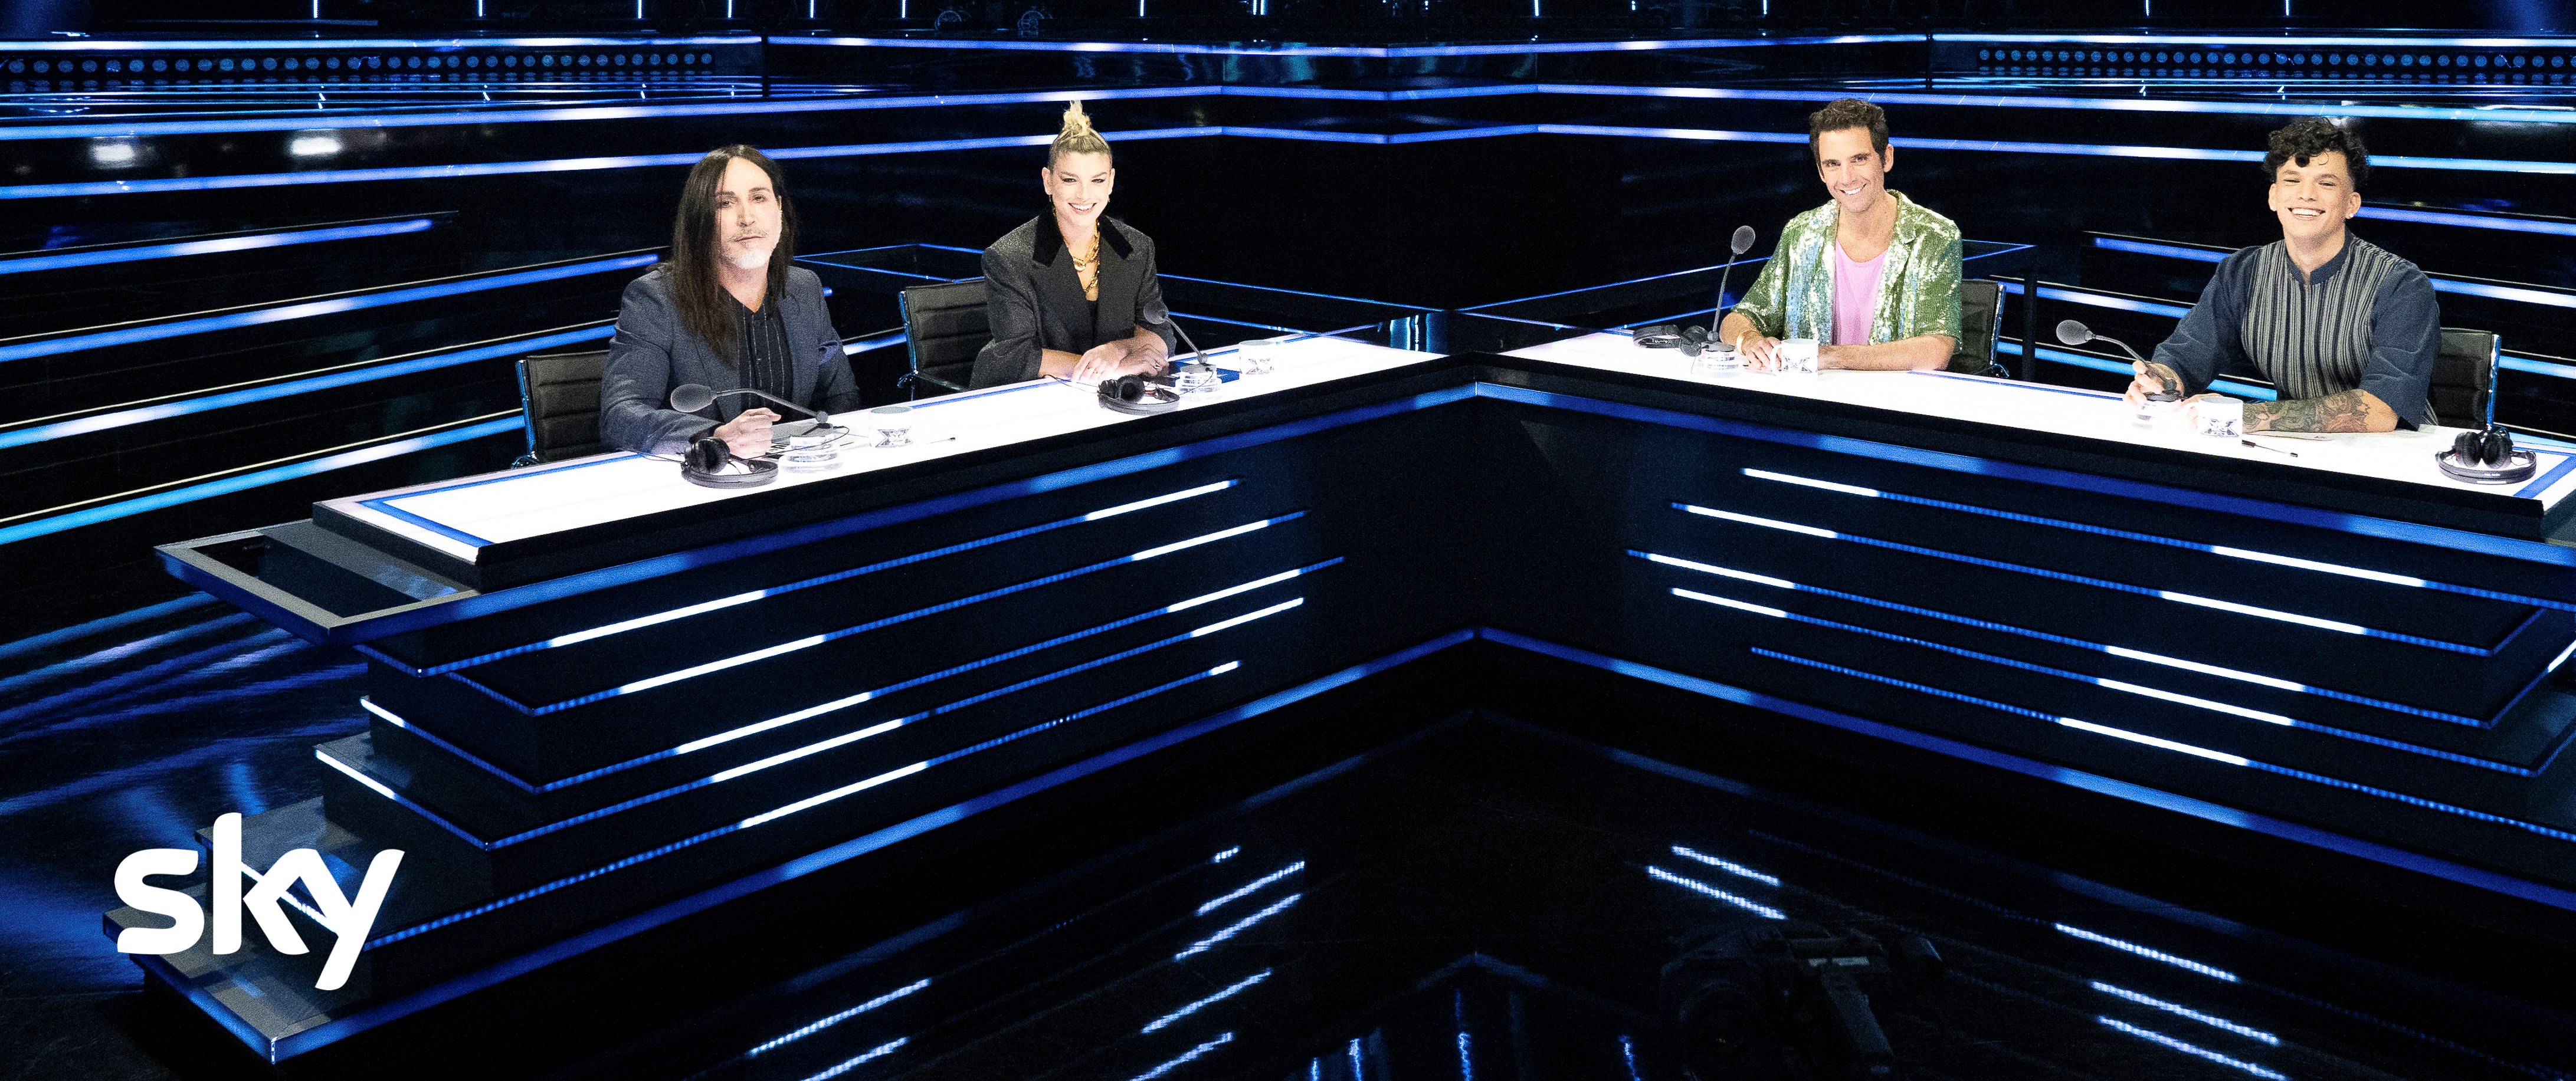 X Factor 2021 semifinale anticipazioni, dai duetti al nuovo brano di Manuel Agnelli